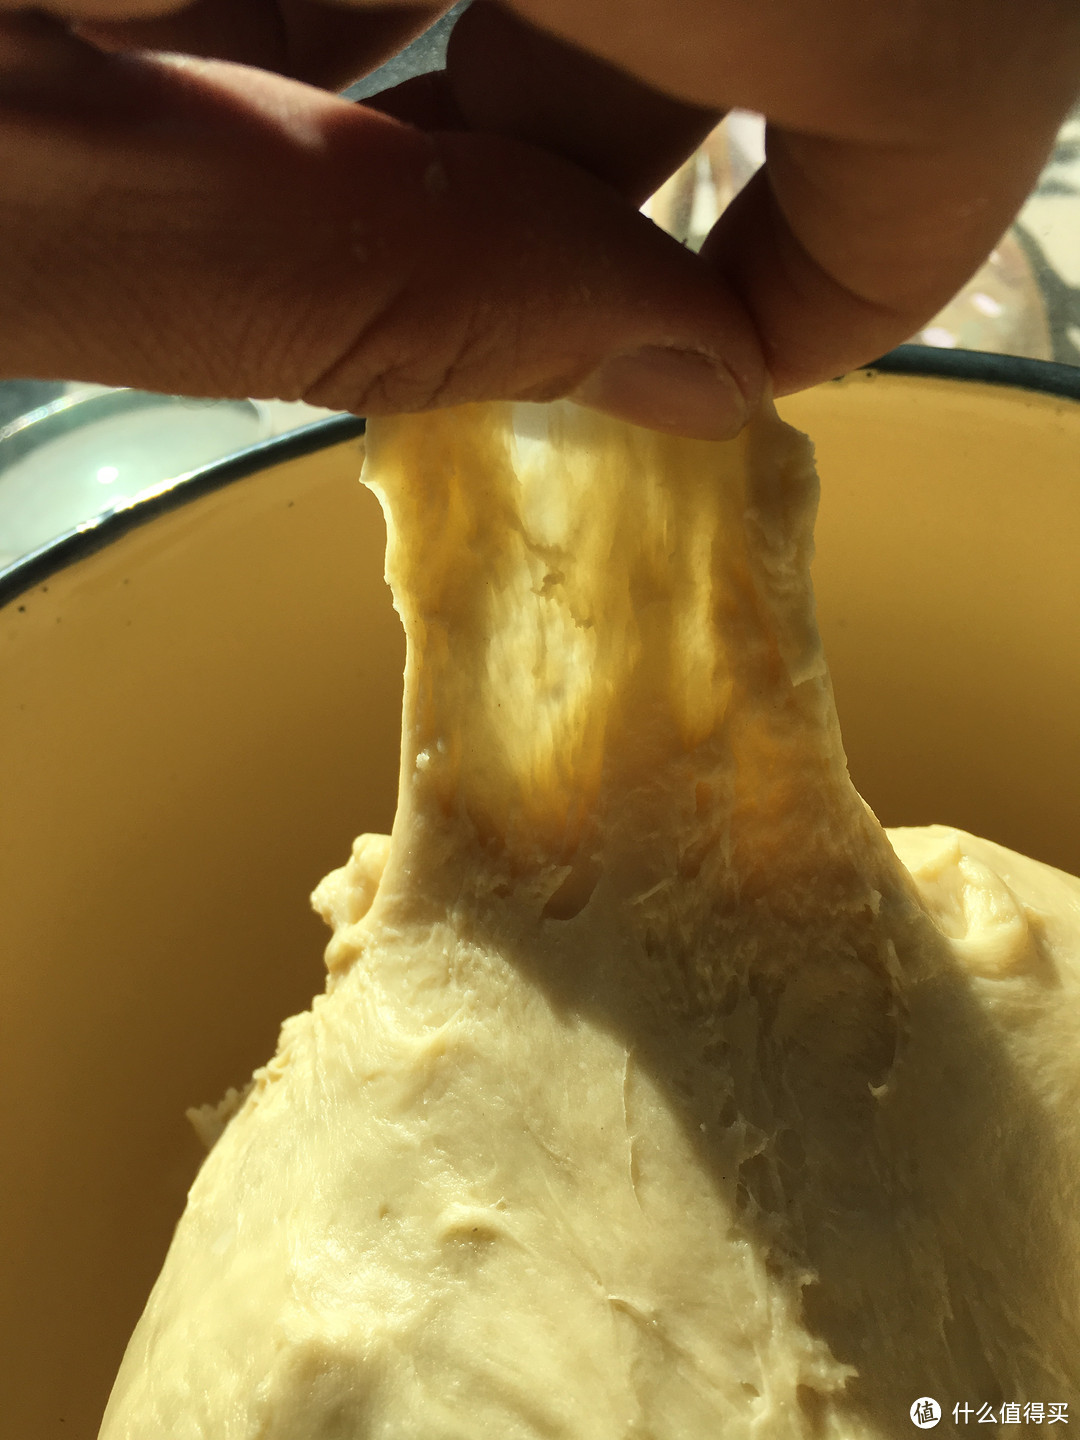 我的面包机大概搅拌30分钟，面团可以拉出这种薄膜就完工了